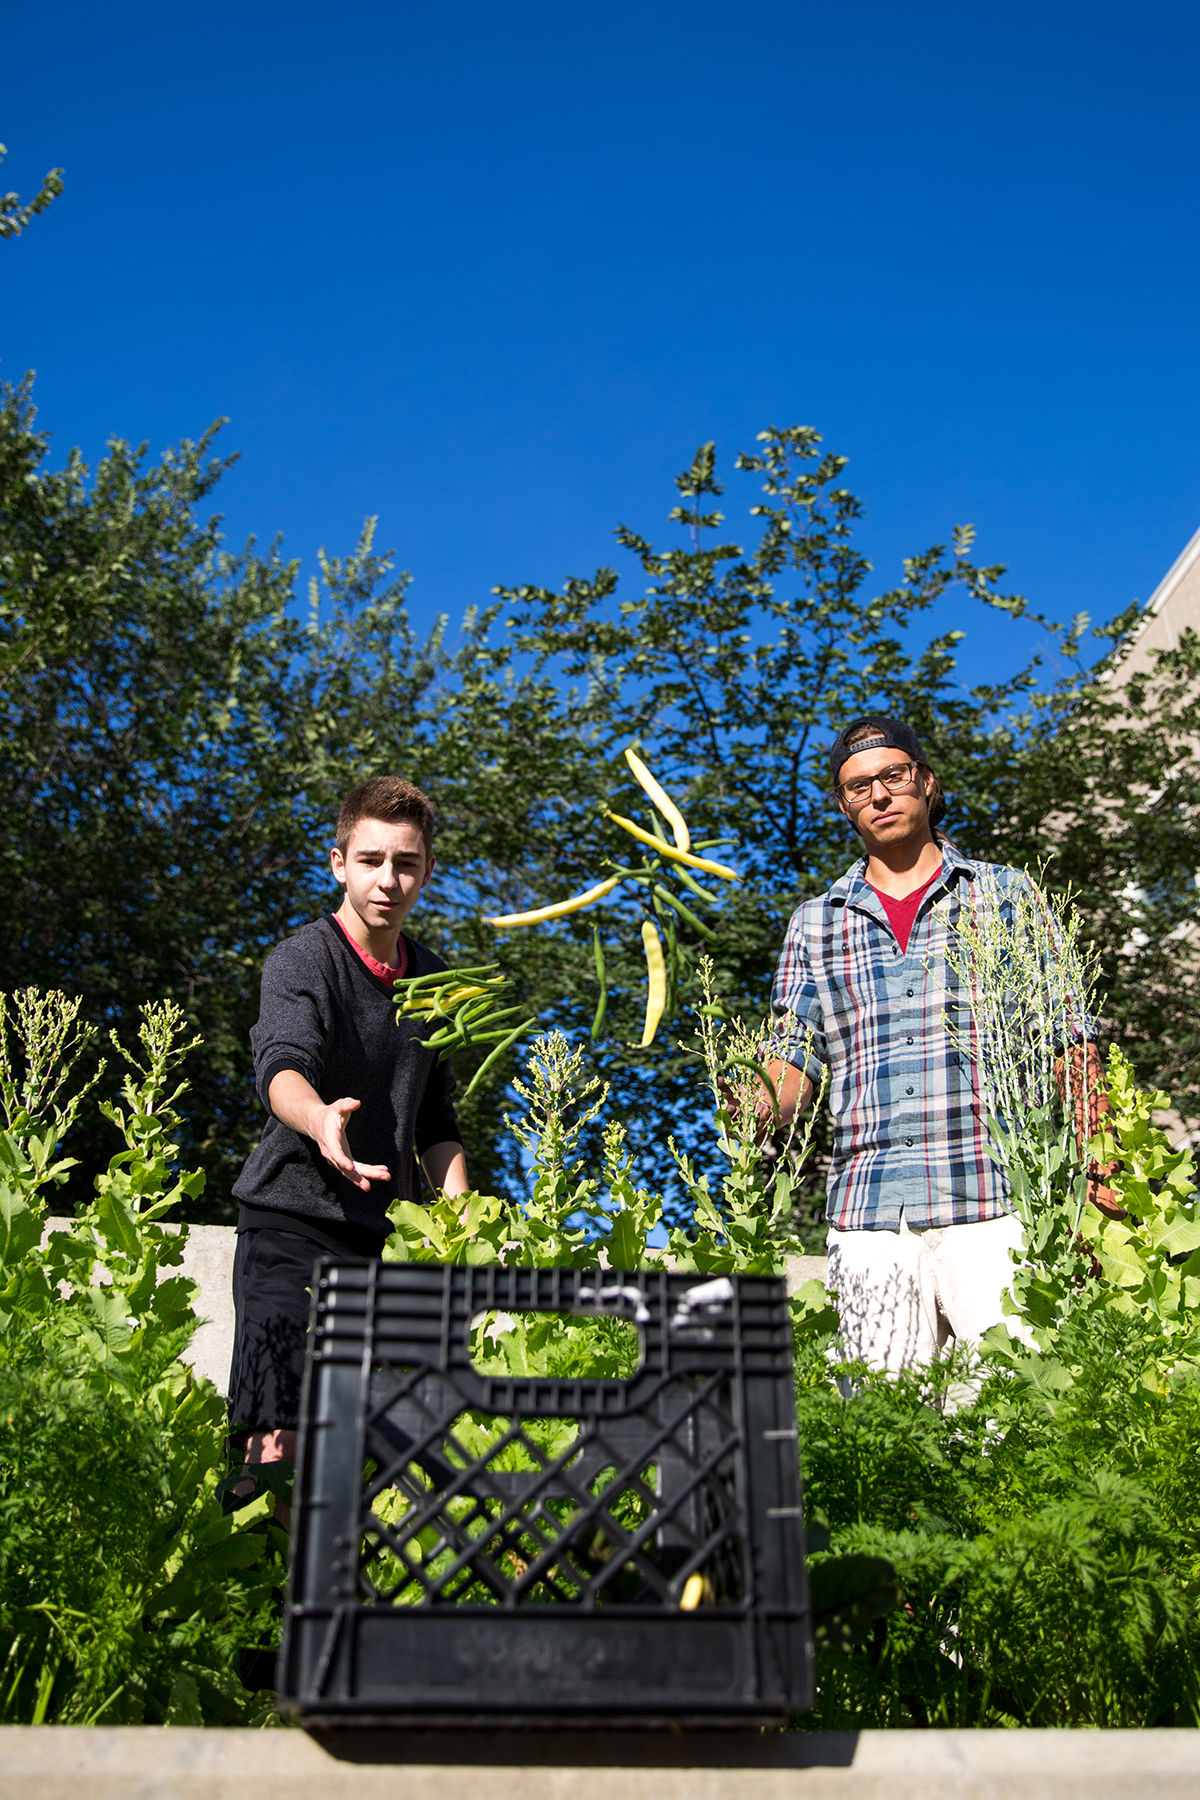 Harvest time at the UMSU campus garden // Photo by Adam Dolman